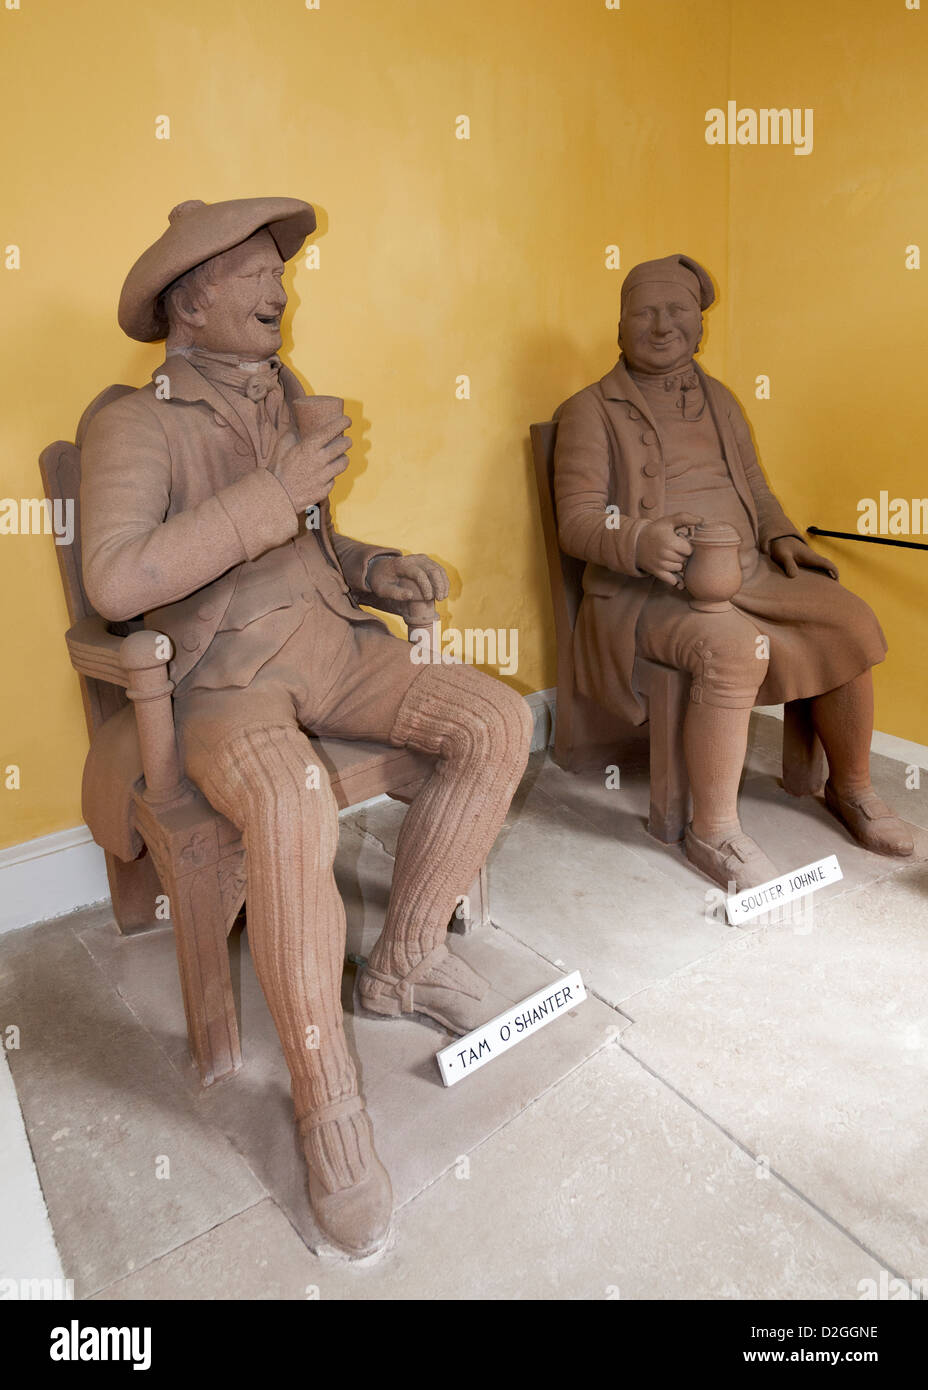 Schottland, Alloway, Statuen des Dichters Robert Burns Zeichen Tam o' shanter und Souter Johnnie Stockfoto